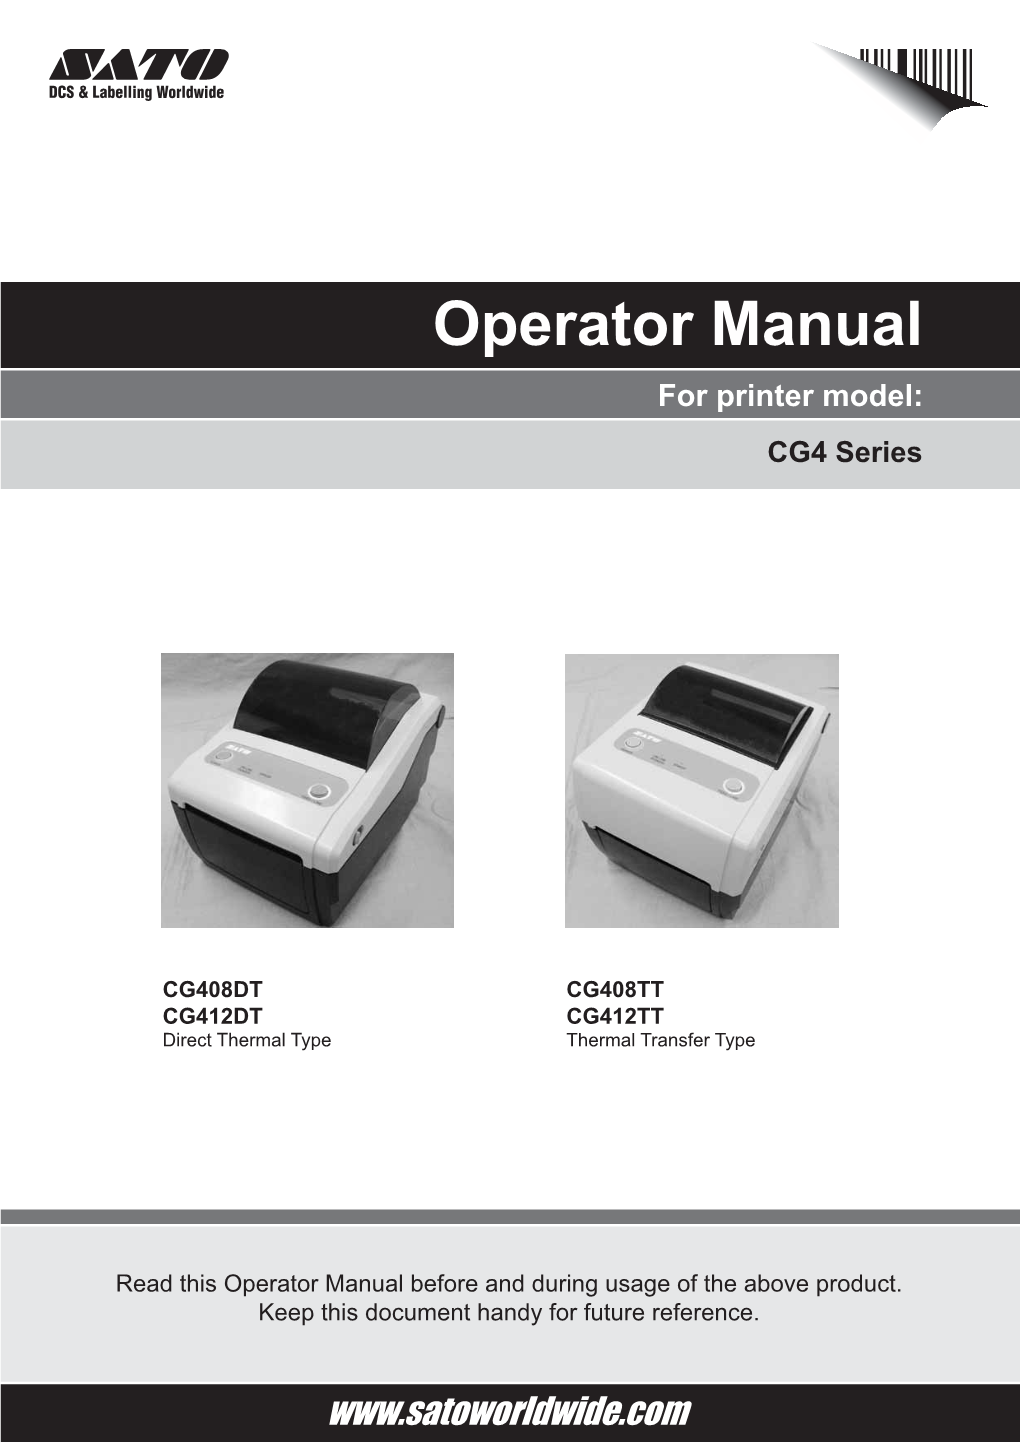 Operator Manual for Printer Model: CG4 Series